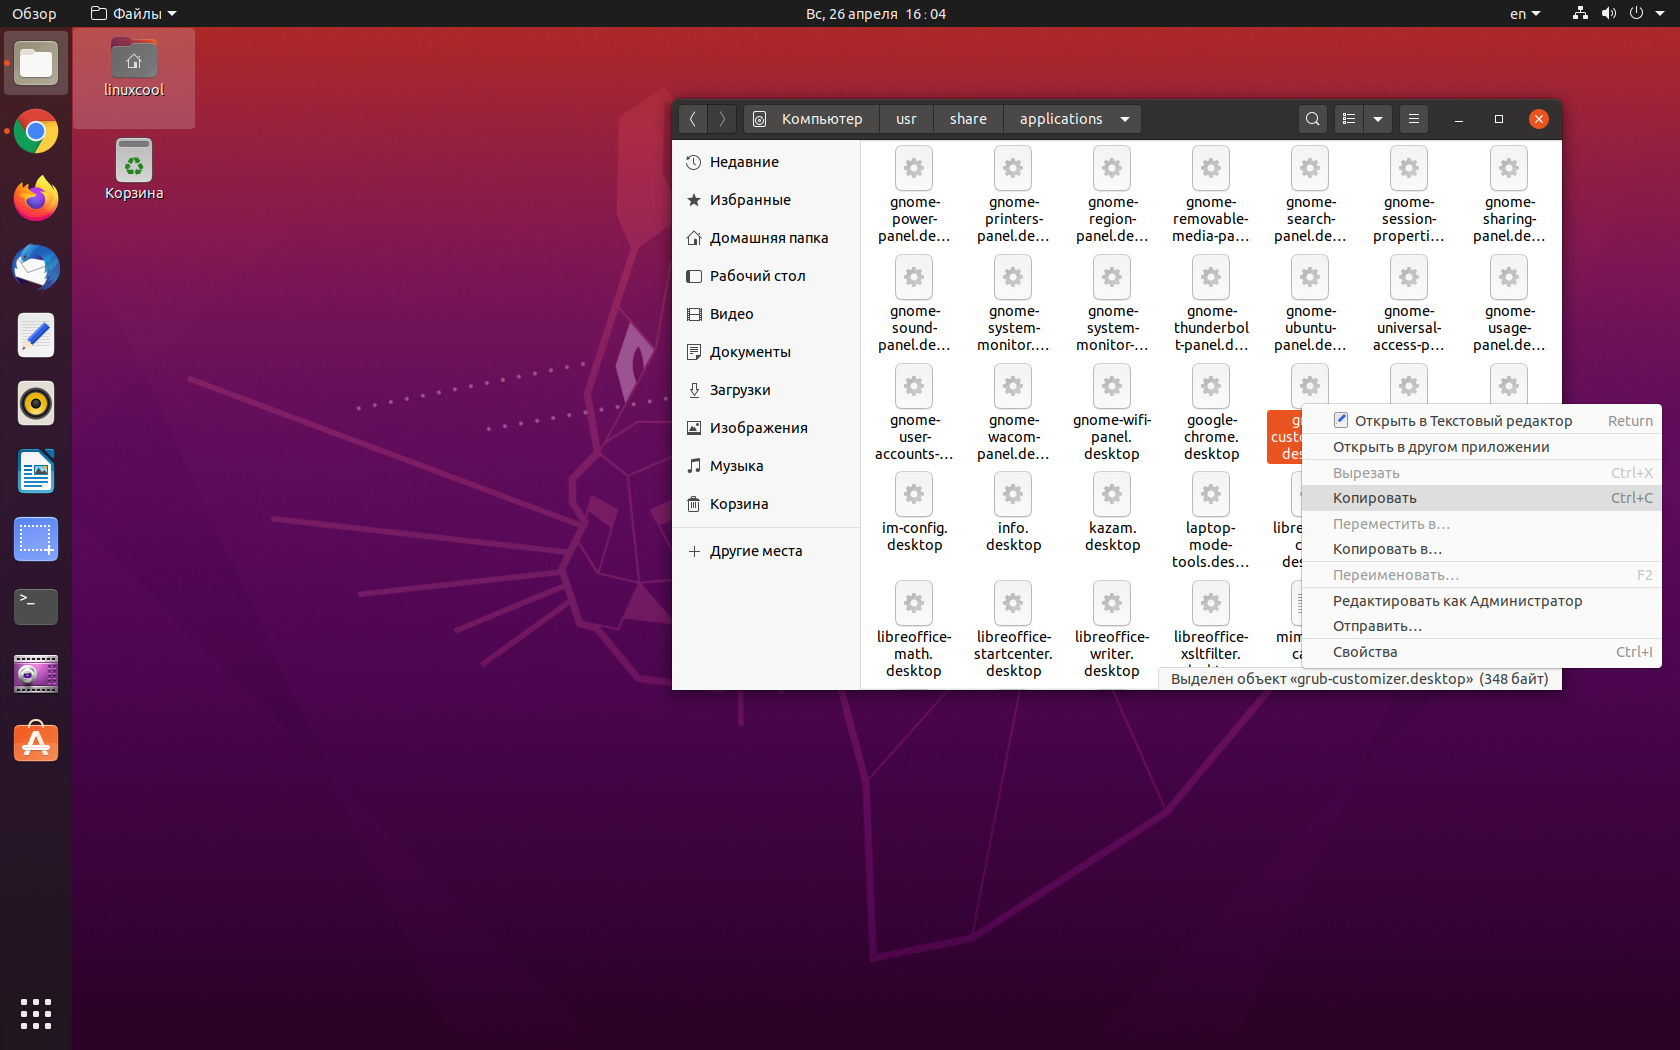 Как сделать ярлыки на рабочем столе в ubuntu 20.04? - shortcuts